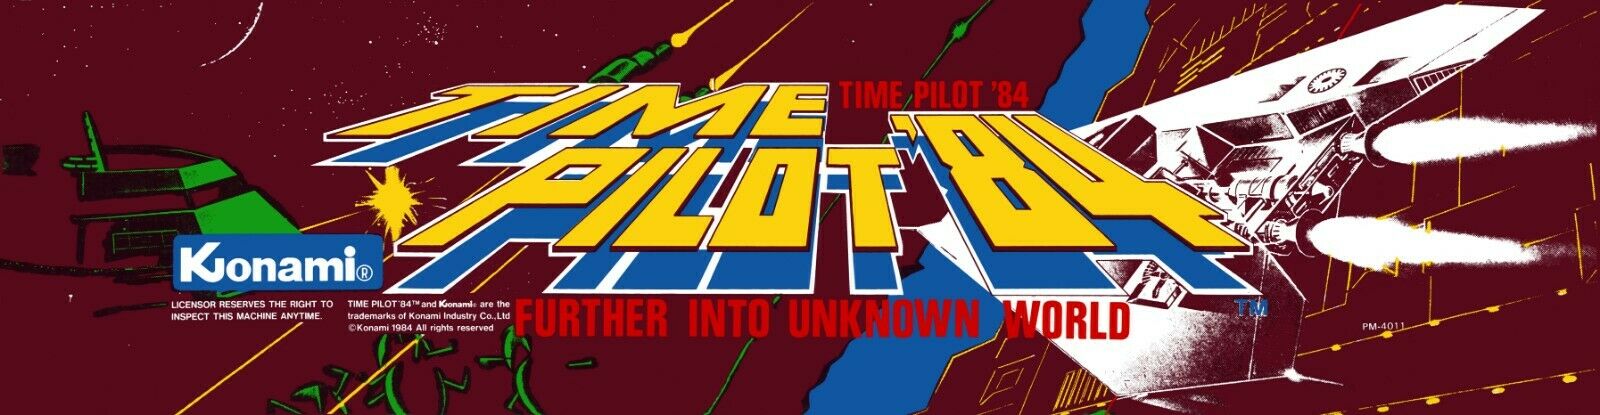 Time Pilot 84